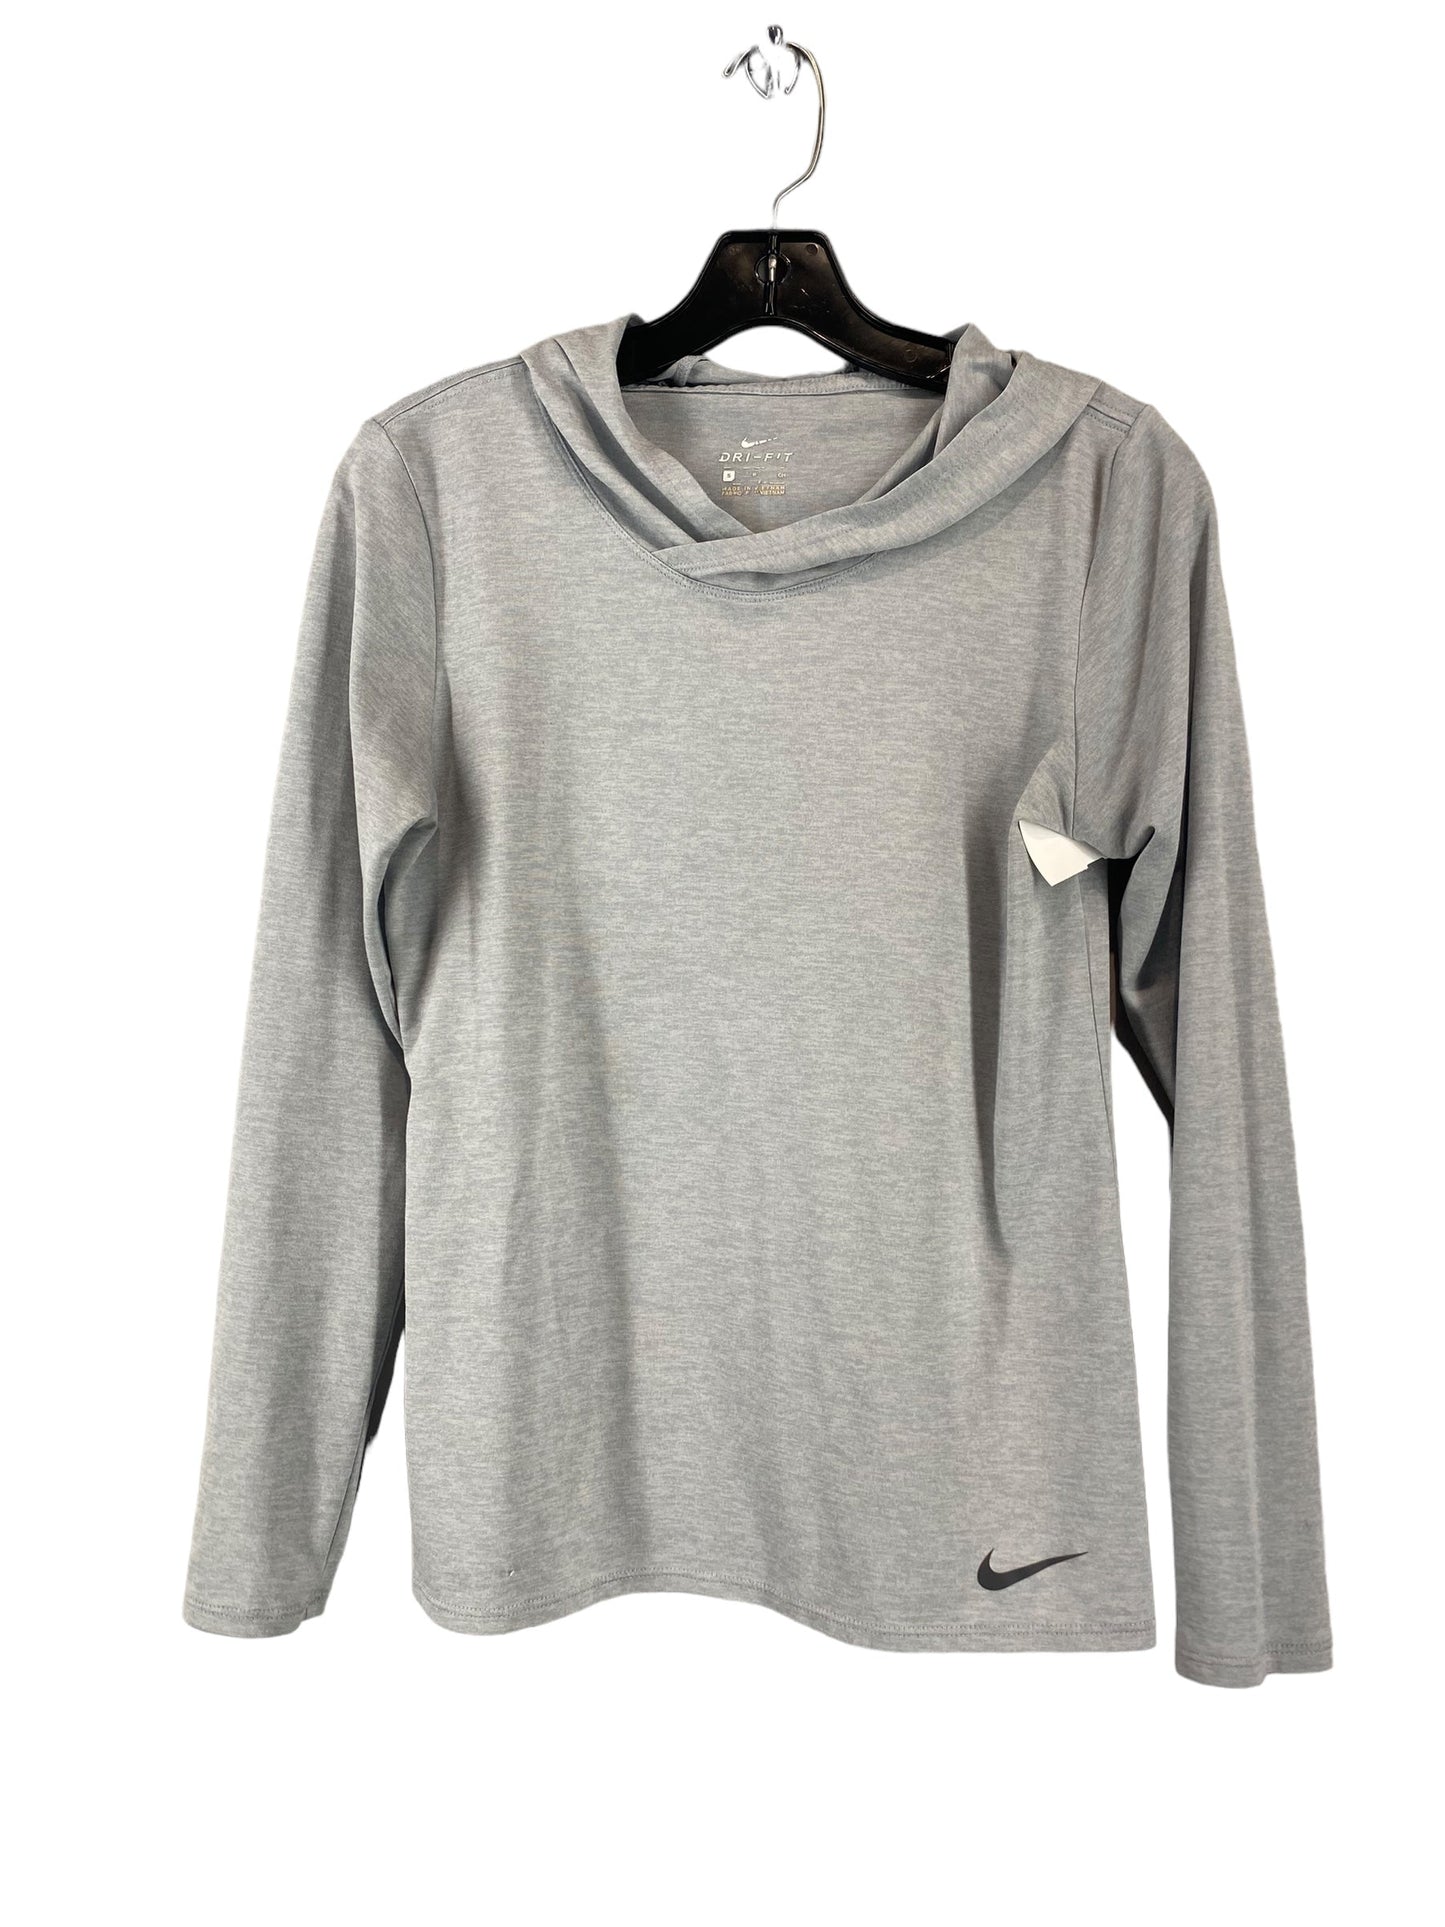 Grey Athletic Top Long Sleeve Hoodie Nike Apparel, Size S